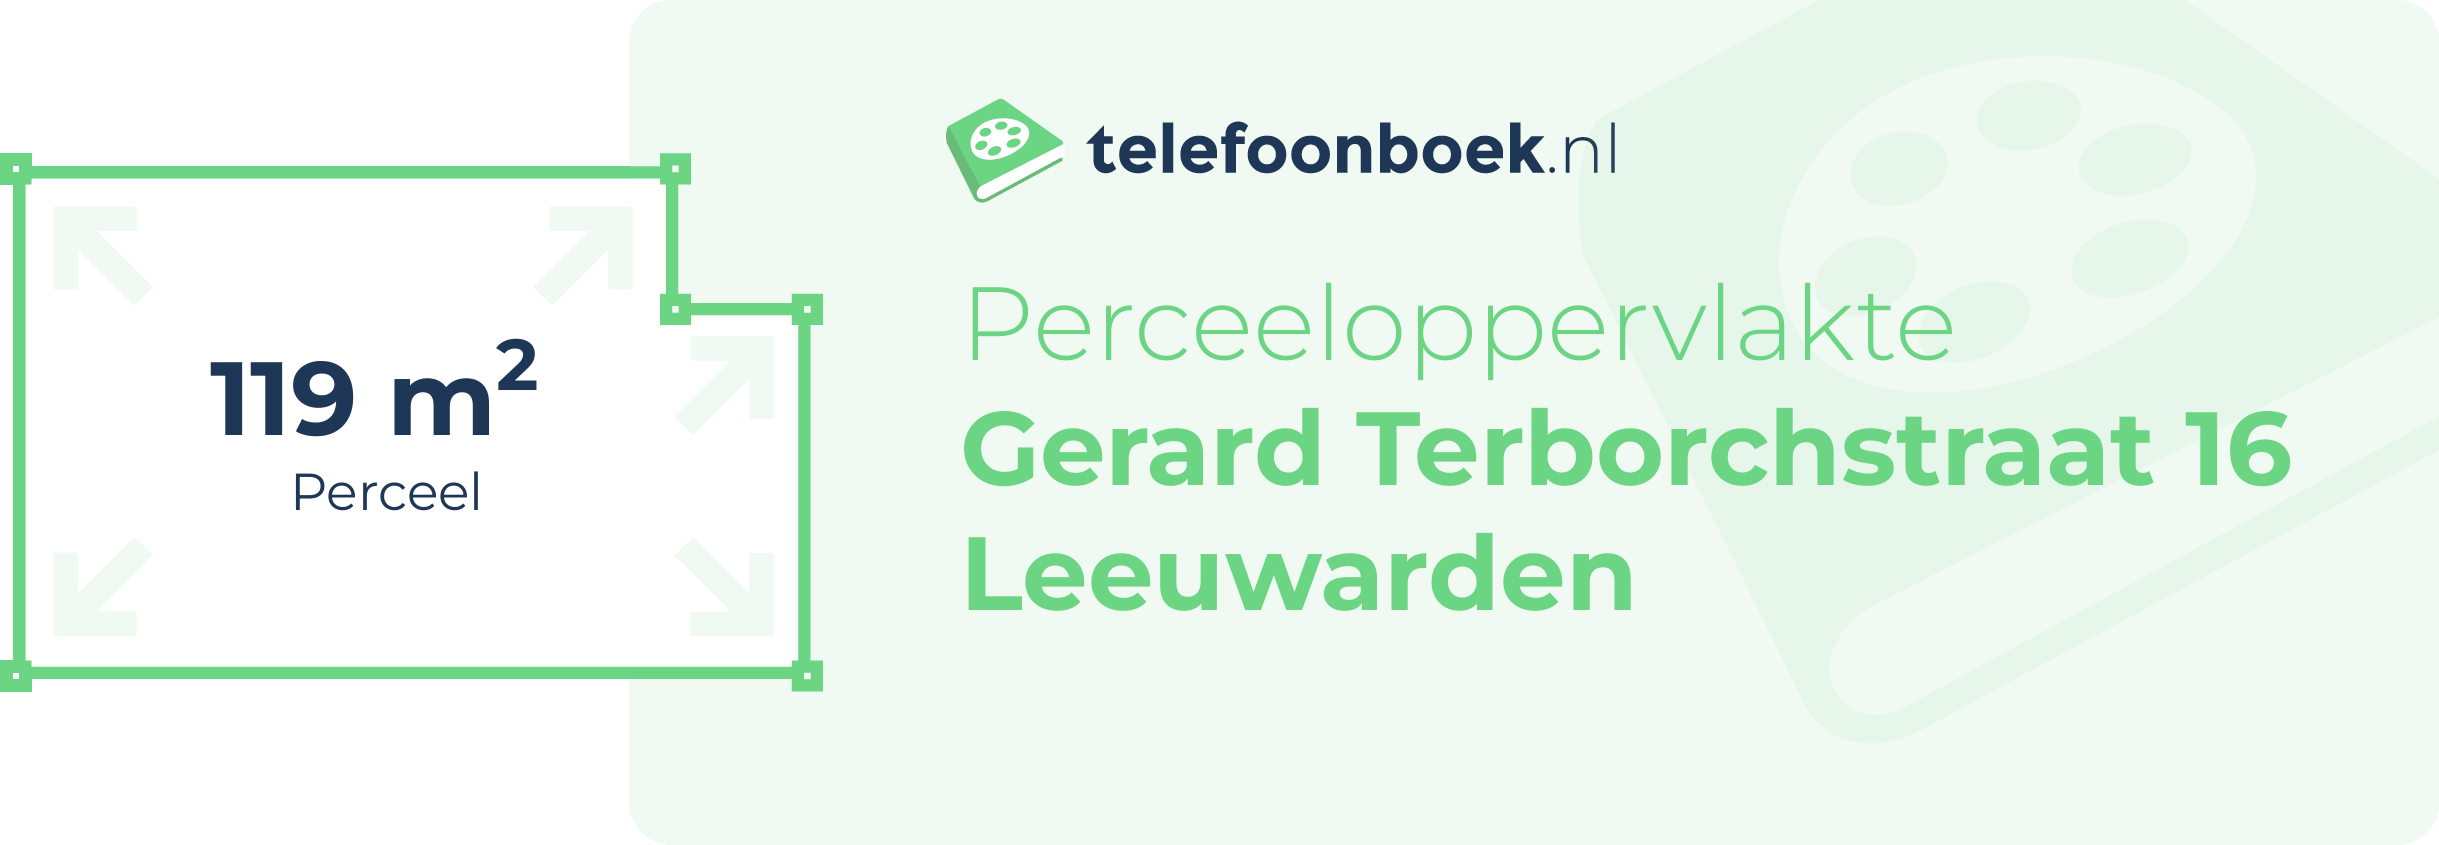 Perceeloppervlakte Gerard Terborchstraat 16 Leeuwarden